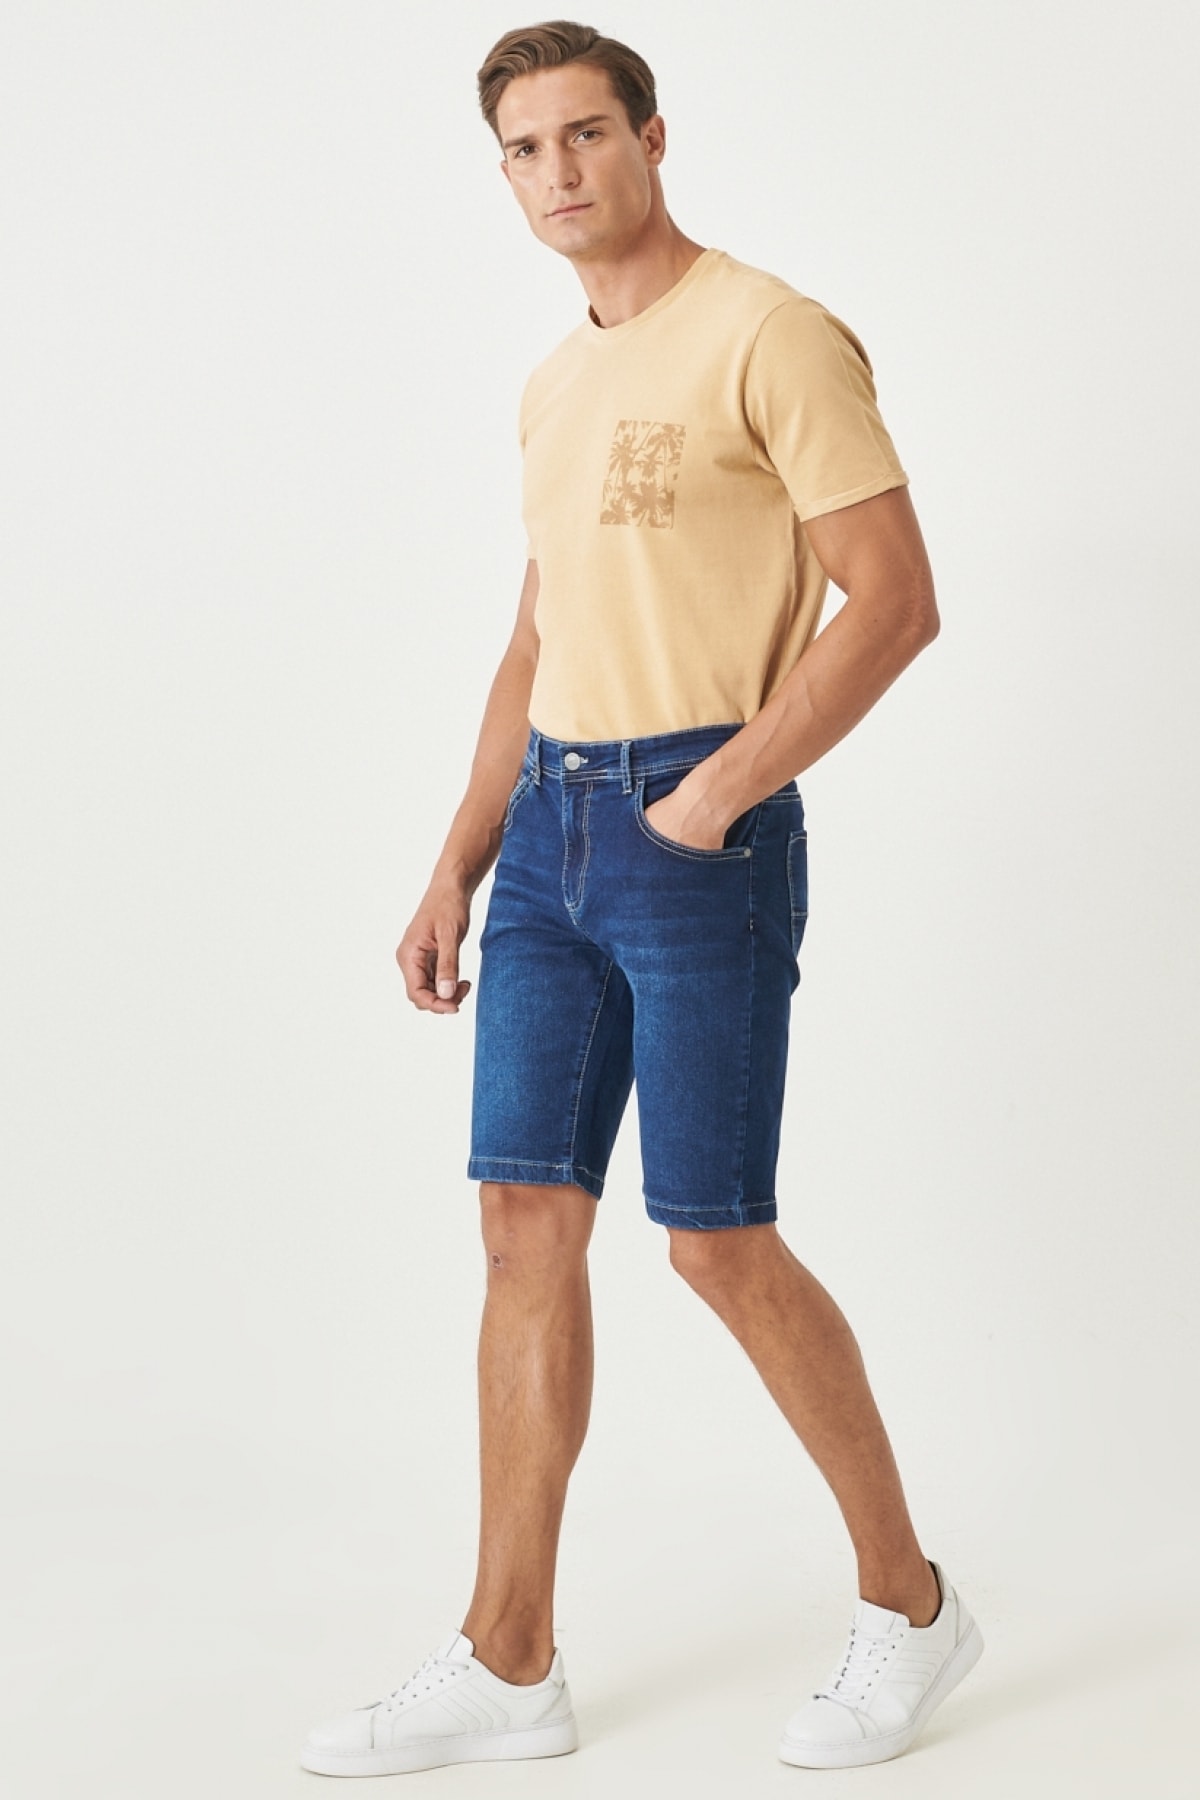 AC&Co / Altınyıldız Classics Men's Navy Blue Comfort Fit Relaxed Cut 5 Pocket Flexible Denim Jeans Shorts